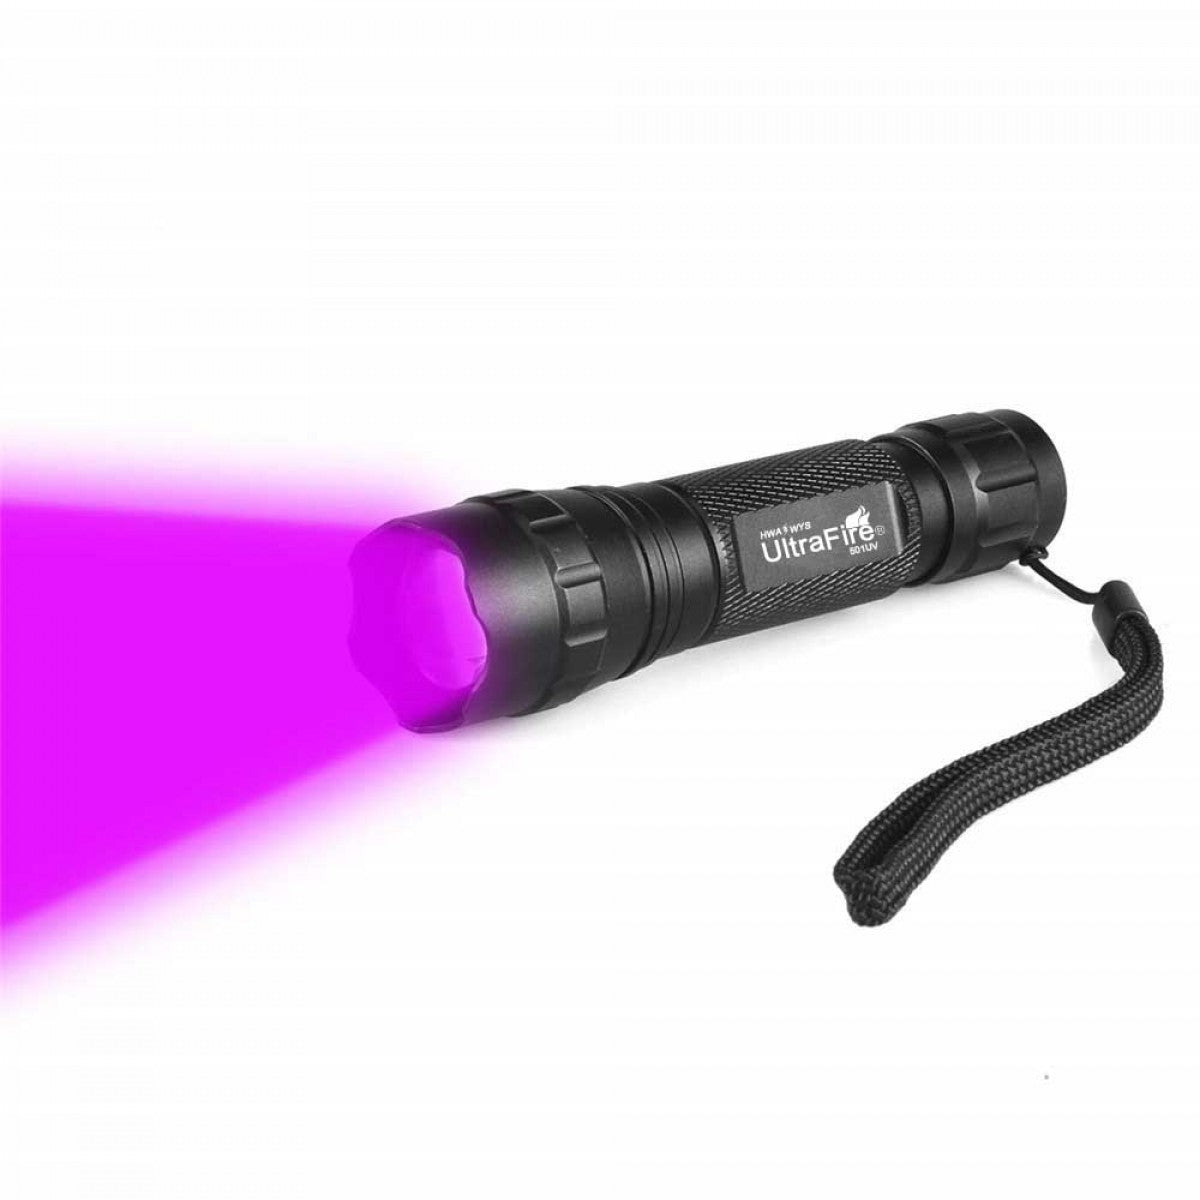 UltraFire 501UV Light Flashlight